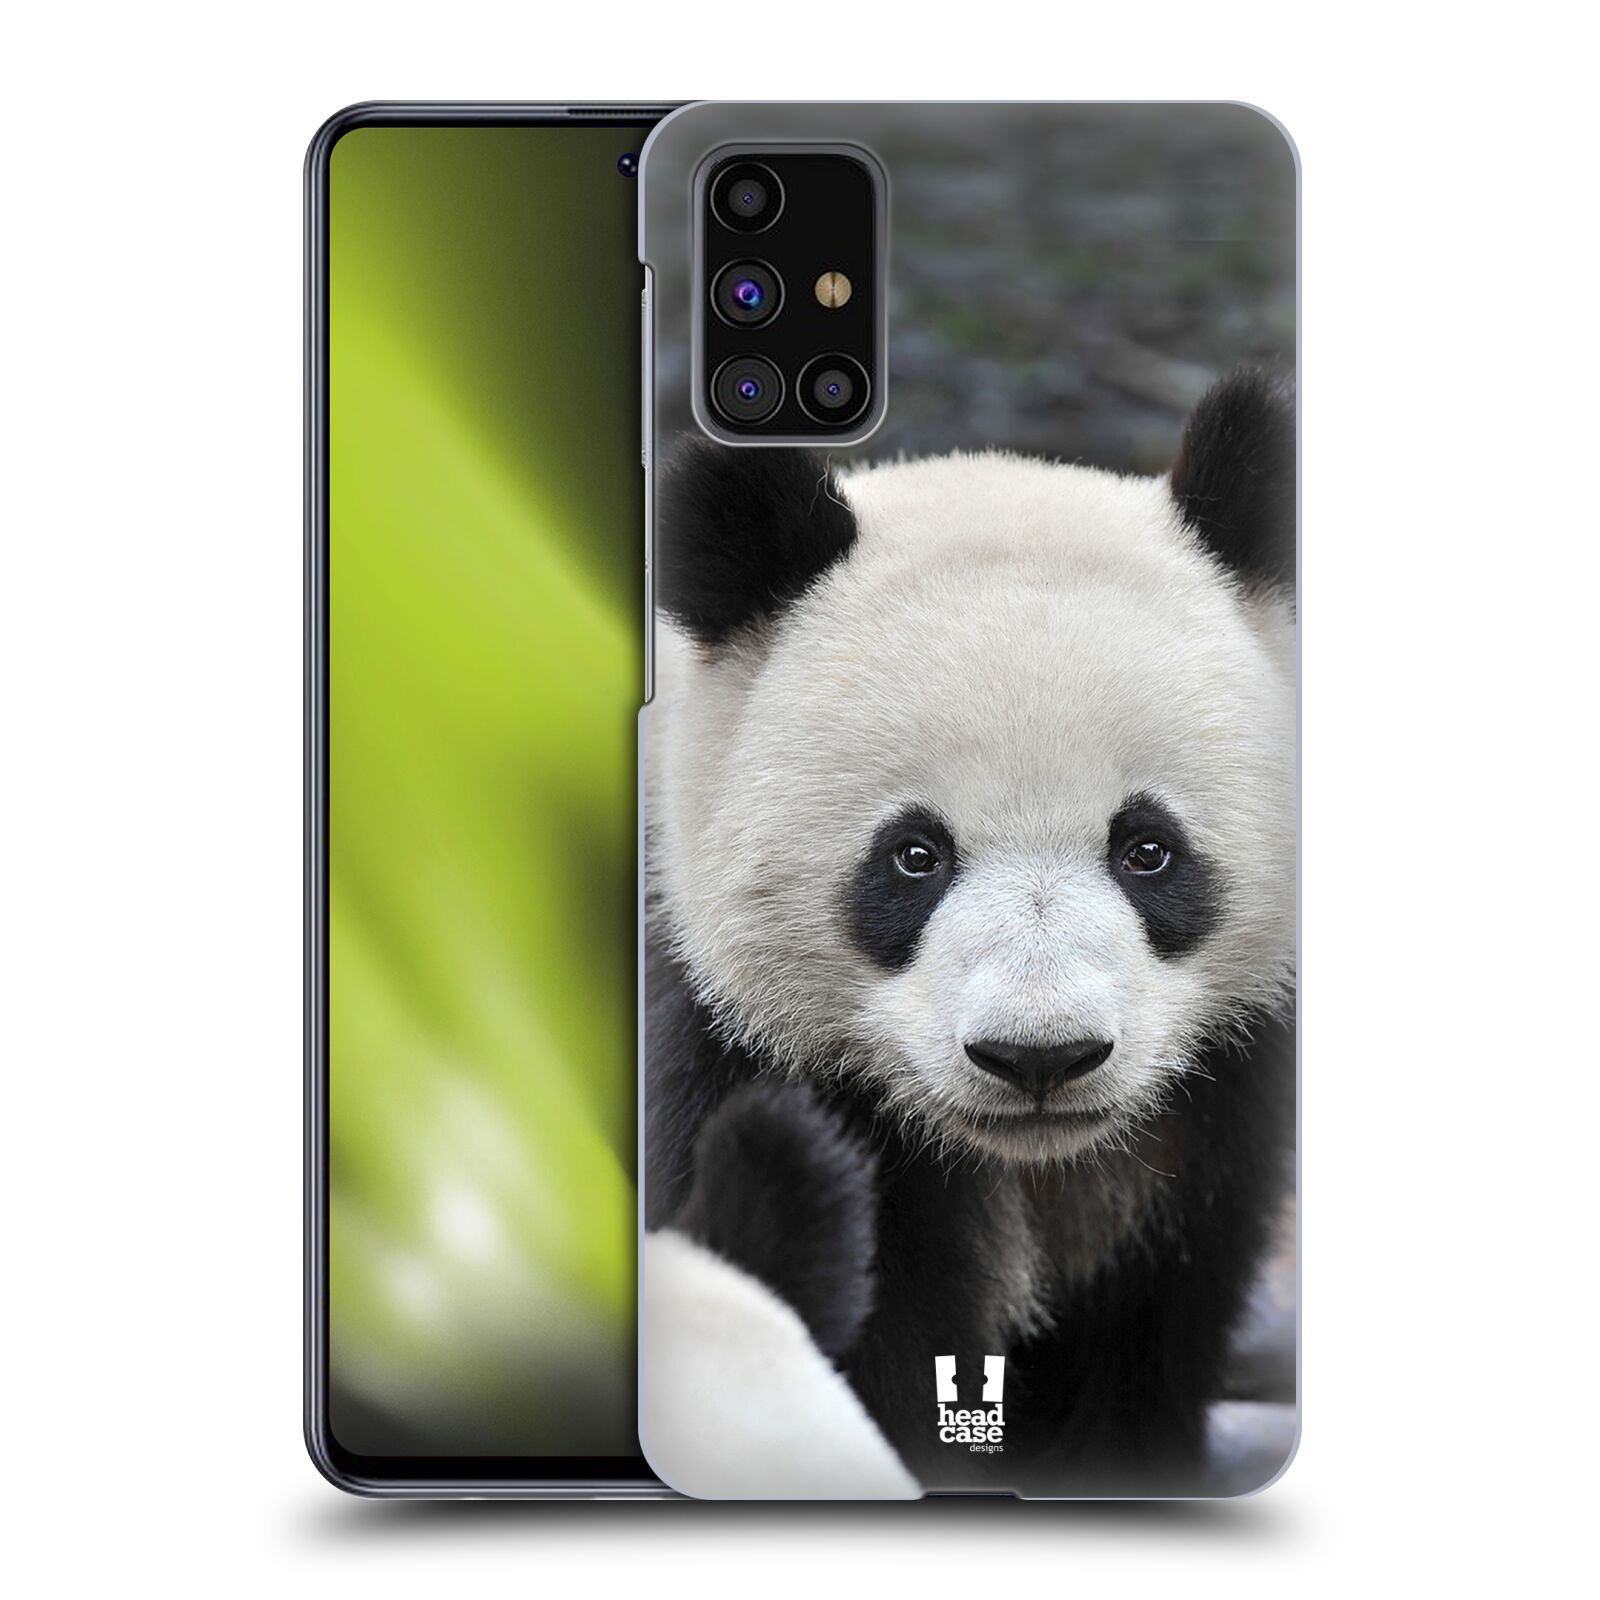 Zadní obal pro mobil Samsung Galaxy M31s - HEAD CASE - Svět zvířat medvěd panda